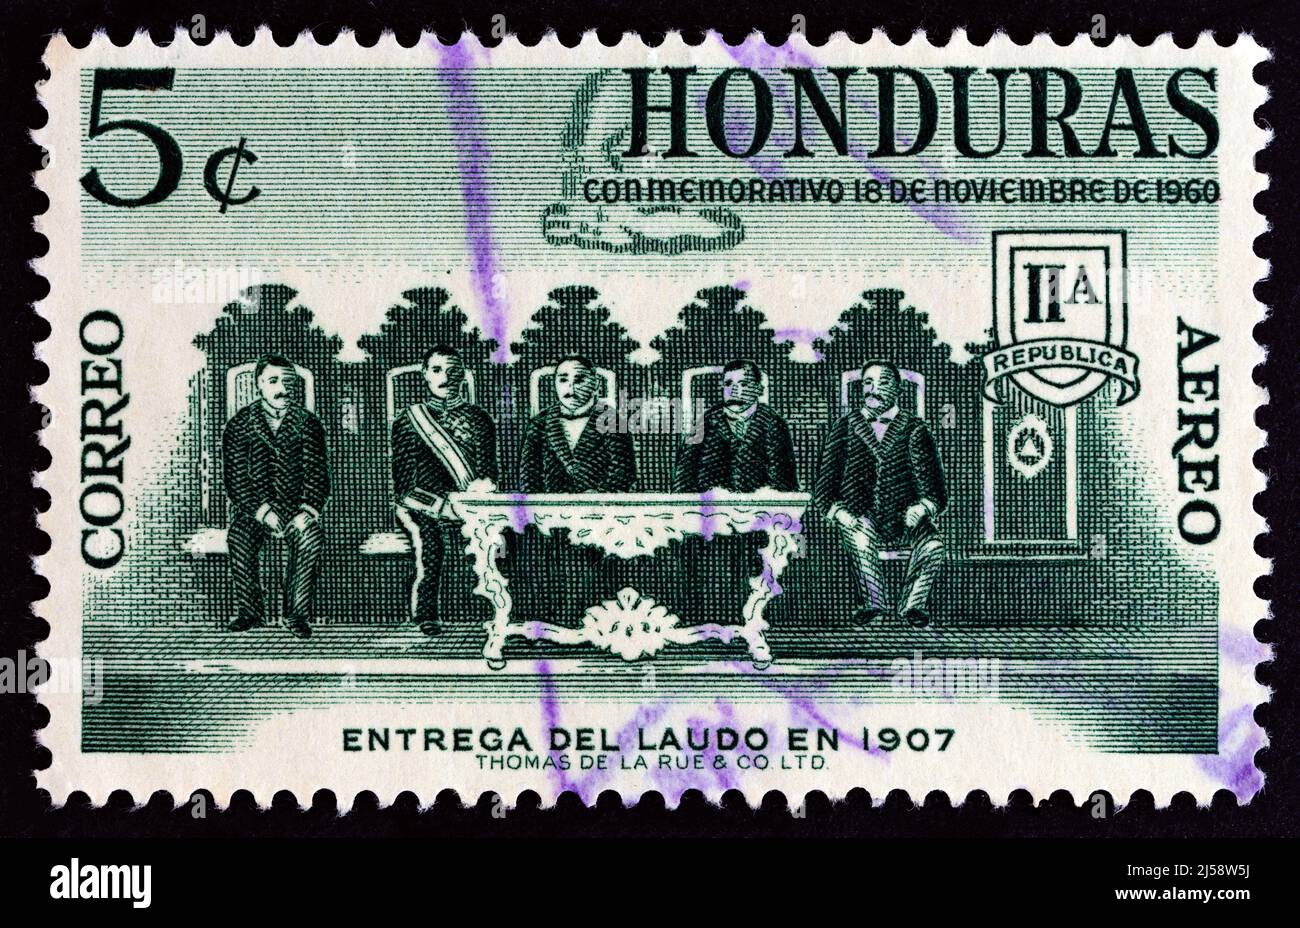 HONDURAS - VERS 1961: Un timbre imprimé au Honduras de la question du règlement du différend frontière avec le Nicaragua montre la commission d'arbitrage. Banque D'Images